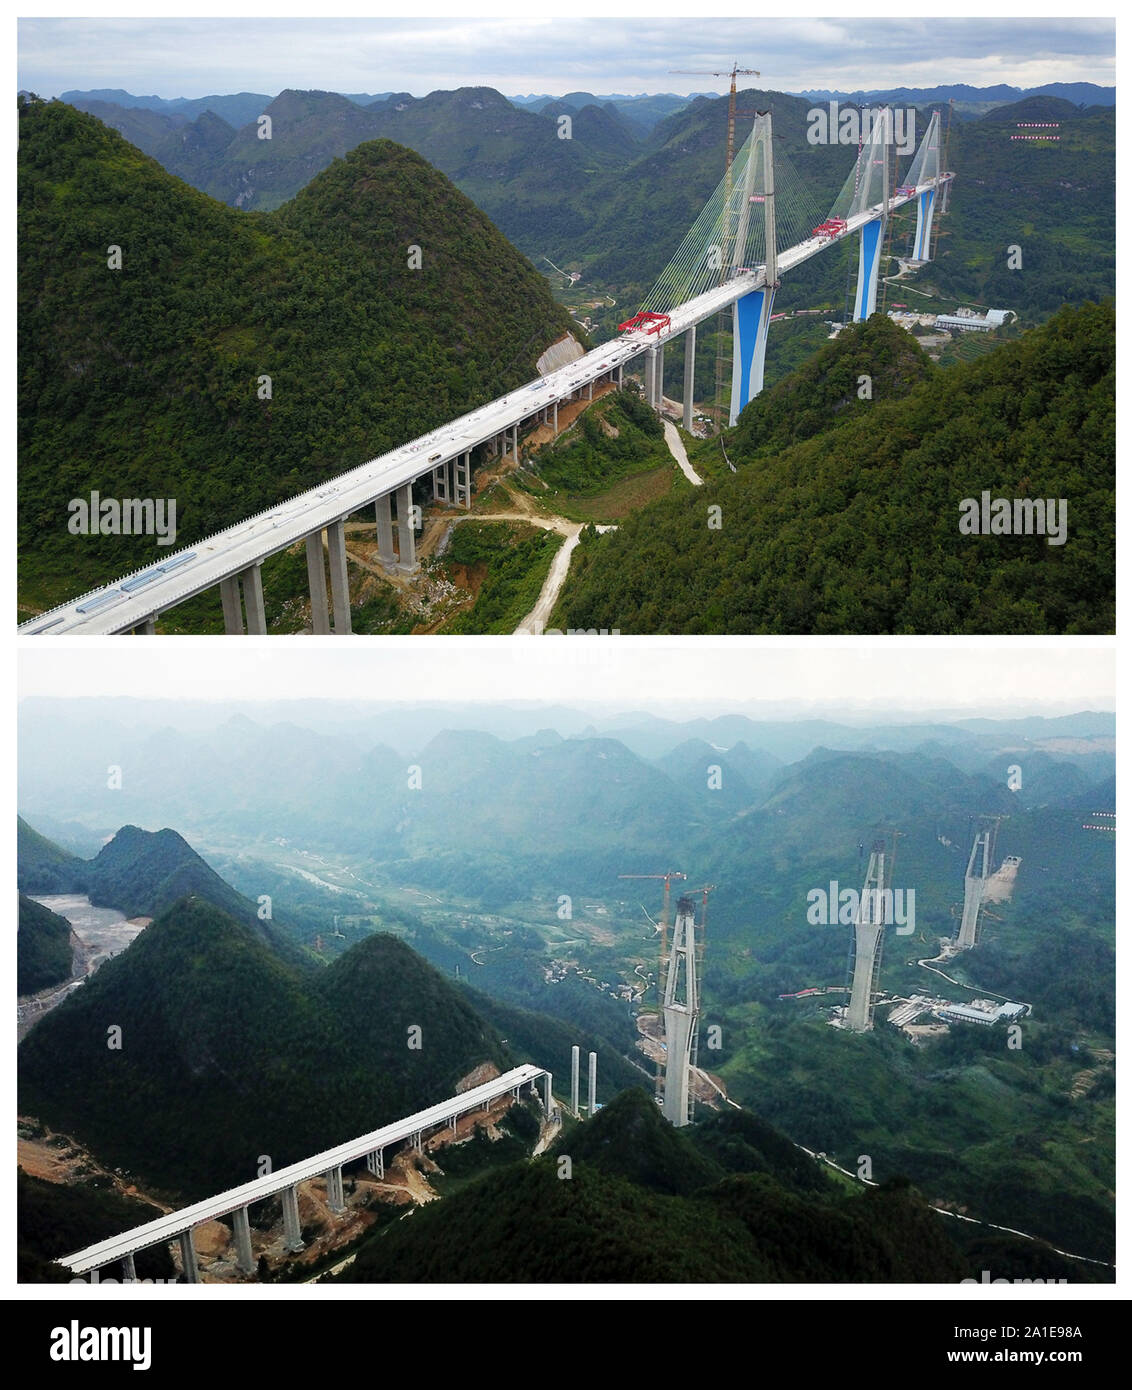 (190926) -- PINGTANG, le 26 septembre 2019 (Xinhua) -- Combo photo aérienne montre le pont de Pingtang dans le sud-ouest de la Chine dans la province du Guizhou le 20 septembre 2019 (en haut) et sur Septembre 25, 2018, respectivement. Pont de Pingtang terminé sa fermeture le jeudi. Le pont, un colossal-câble charge viaduc ayant une portée de 2 135 mètres, sera un sujet sur le Pingtang-Luodian Caodu l'autoroute au dessus du canyon de la rivière. Le pont sera terminé et ouvert à la circulation d'ici la fin de 2019, le raccourcissement du temps de trajet entre Pingtang et Luodian de deux heures et demie à une heure environ. (Xinhua/Yang Banque D'Images